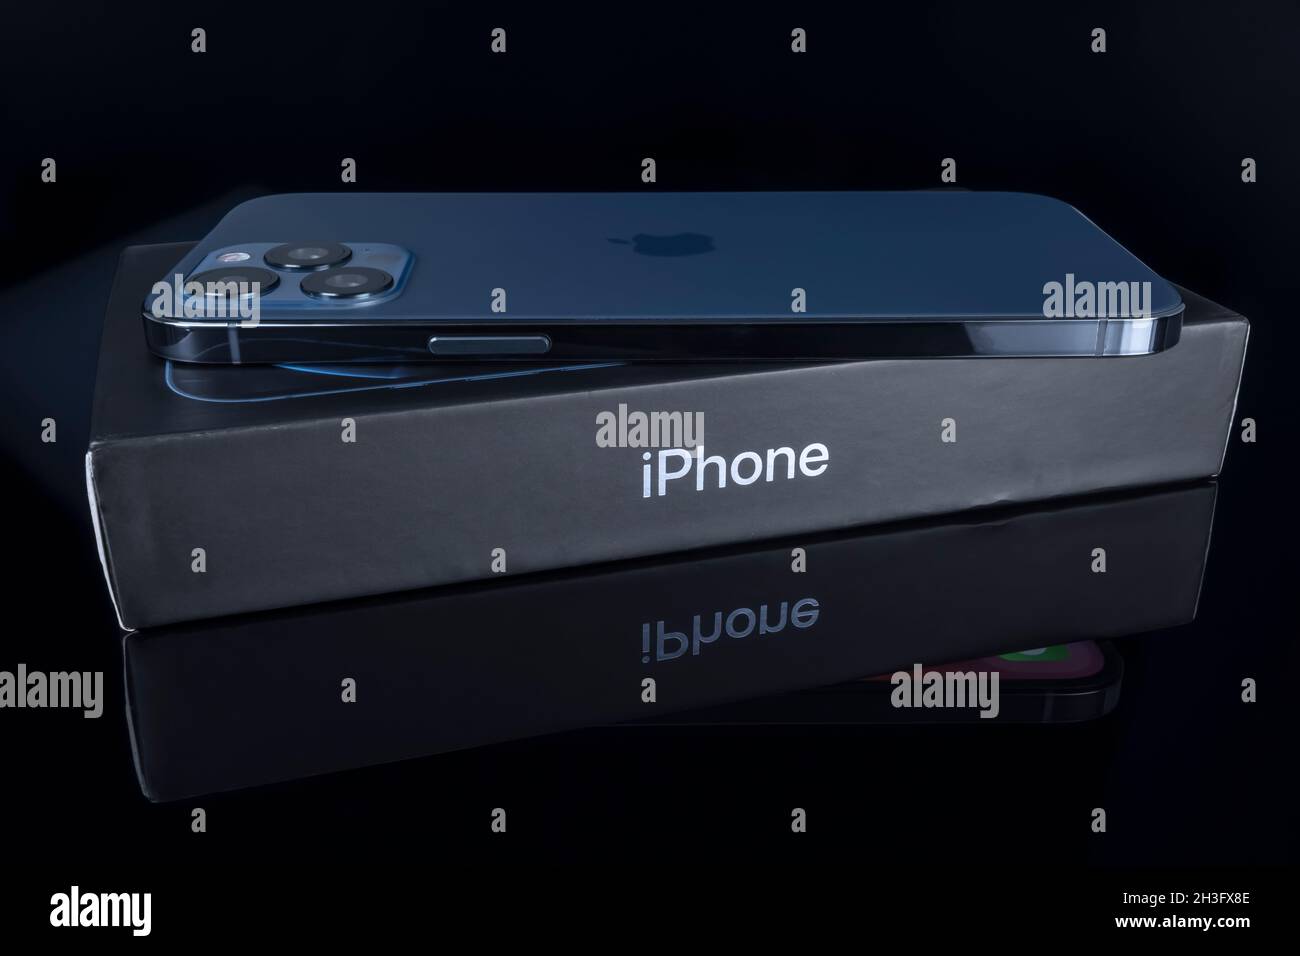 Galati, Rumänien - 14. Oktober 2021: Studioaufnahme des neuen Apple iPhone 12 Pro Max in blauer Farbe über der iPhone-Box. Isolieren auf schwarzem Hintergrund. Illustrative e Stockfoto